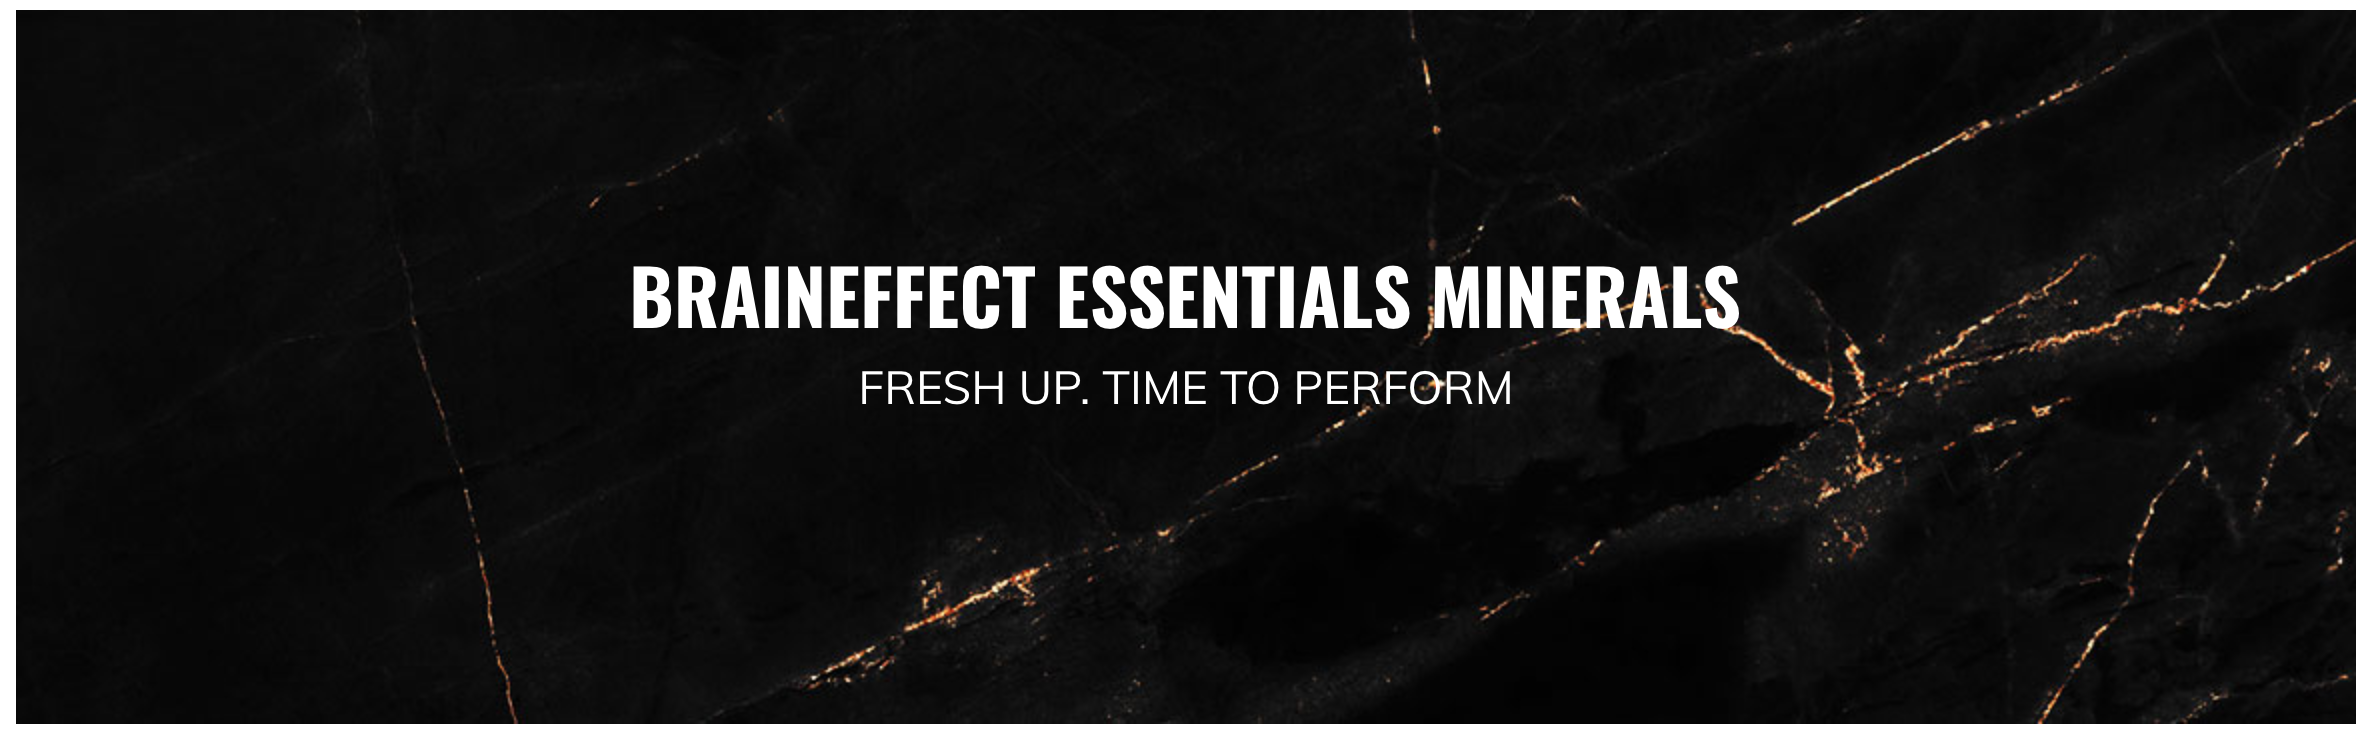 Braineffect Essentials Minerals